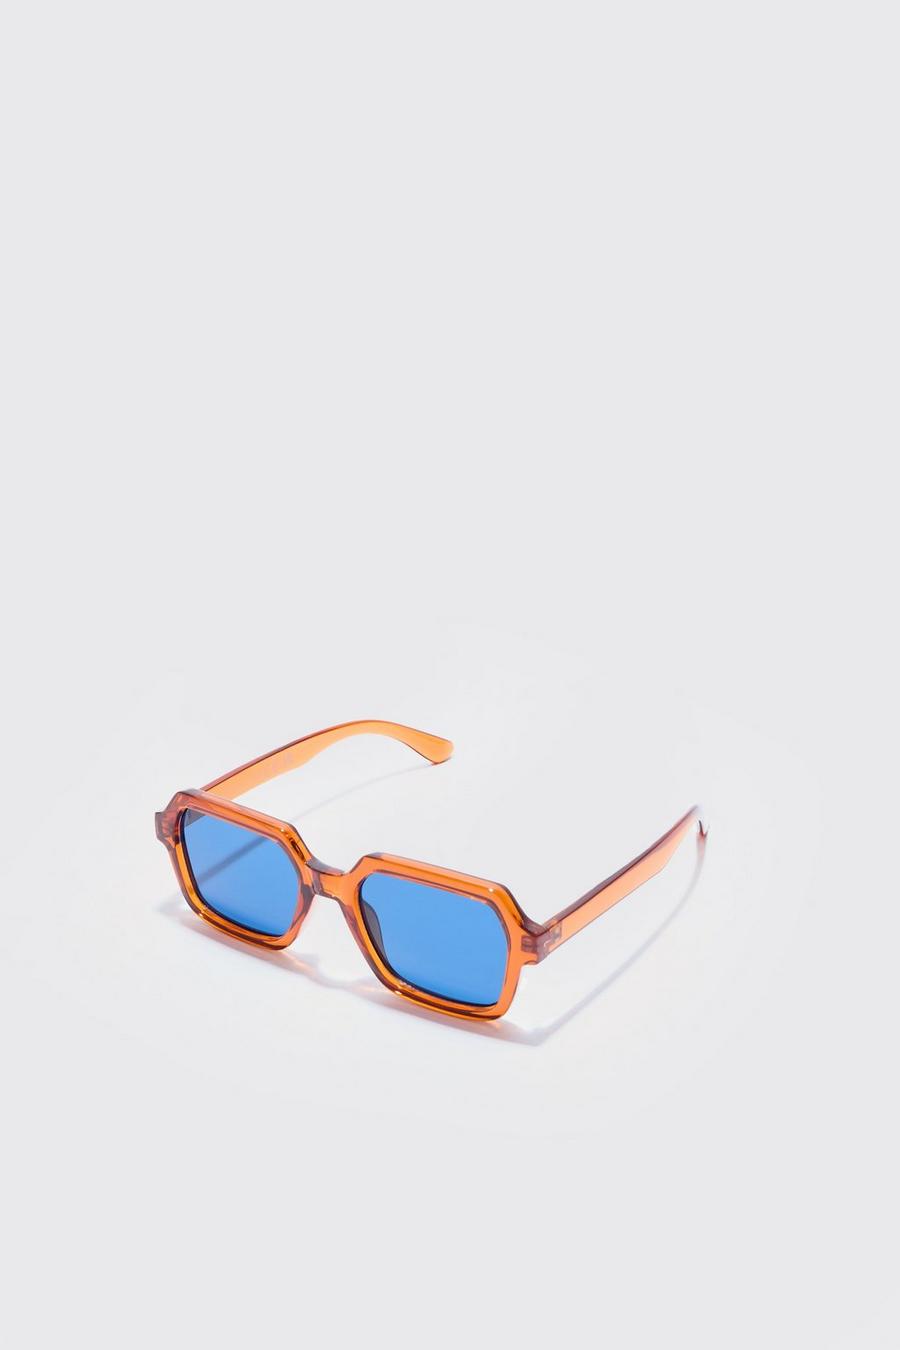 Sechseckige Sonnenbrille mit getönten Gläsern, Orange